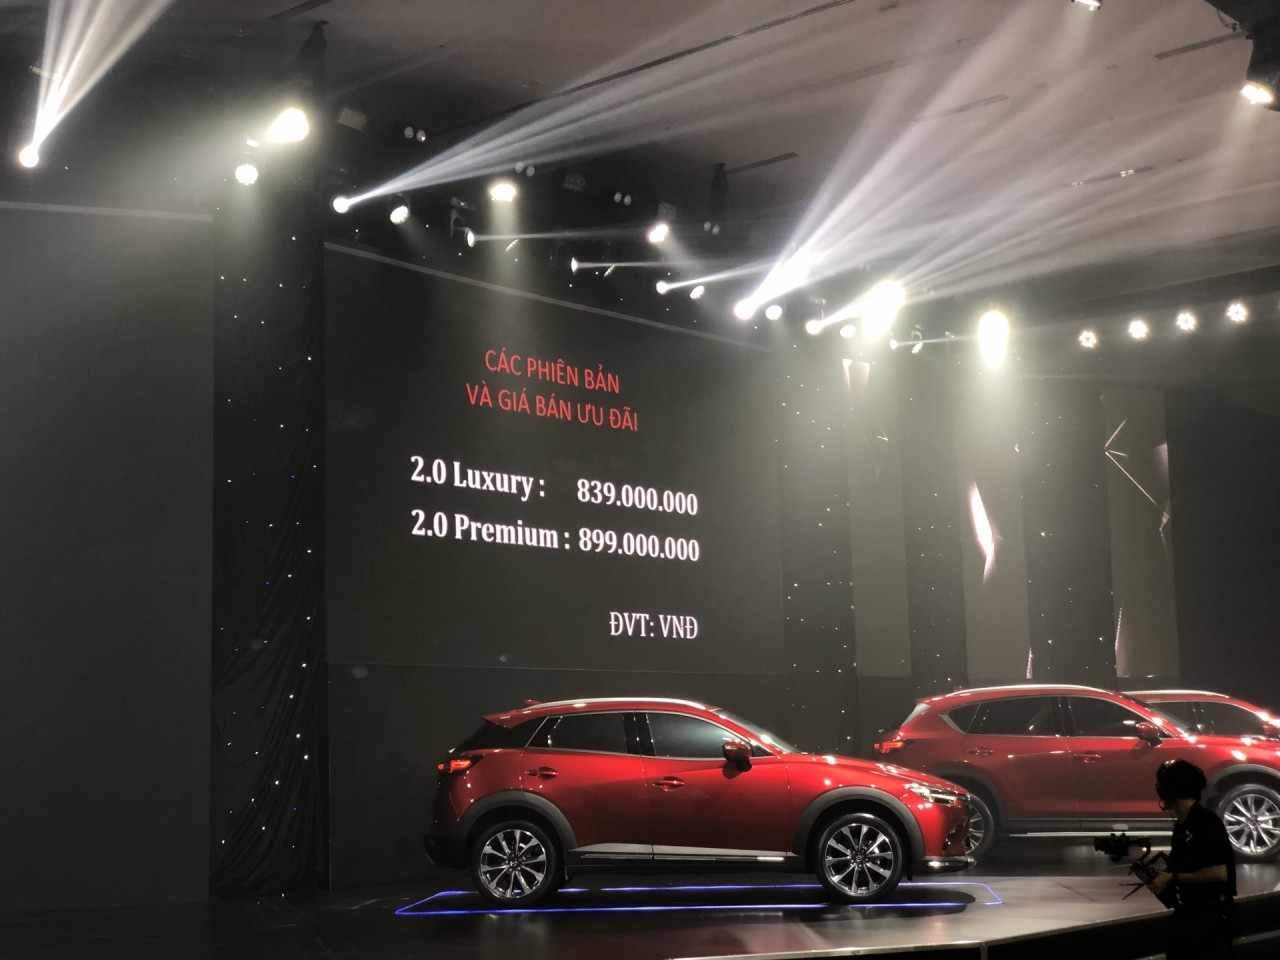 Mazda công bố giá bán: CX-3 giá 629 - 709 triệu đồng và CX-30 giá 839 - 899 triệu đồng